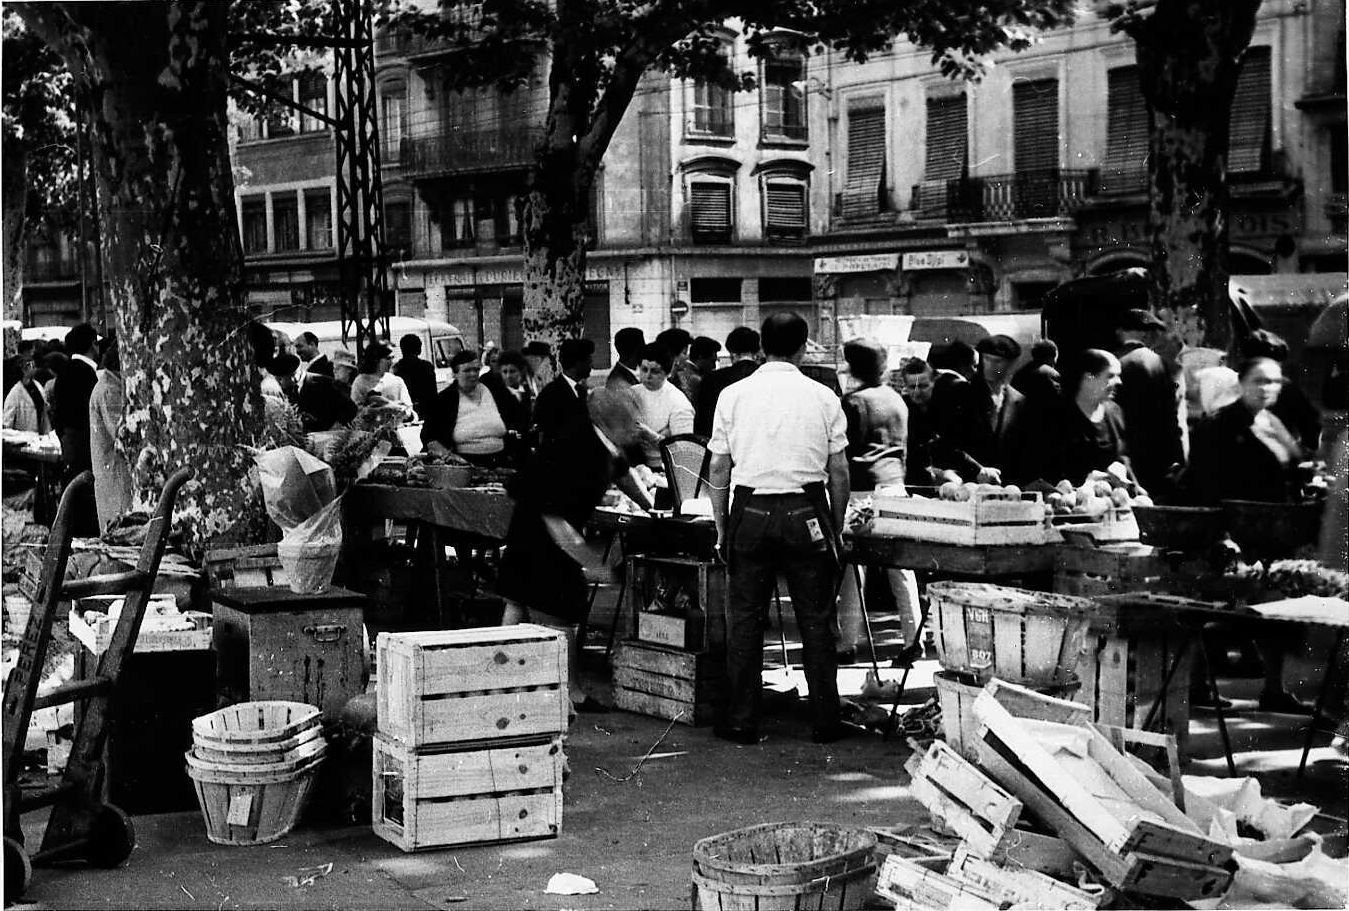 Marché Saint-Antoine : tirage photo. NB par Henri Hours (26/05/1963, cote : 1PH/681/2, CC-BY 4.0)